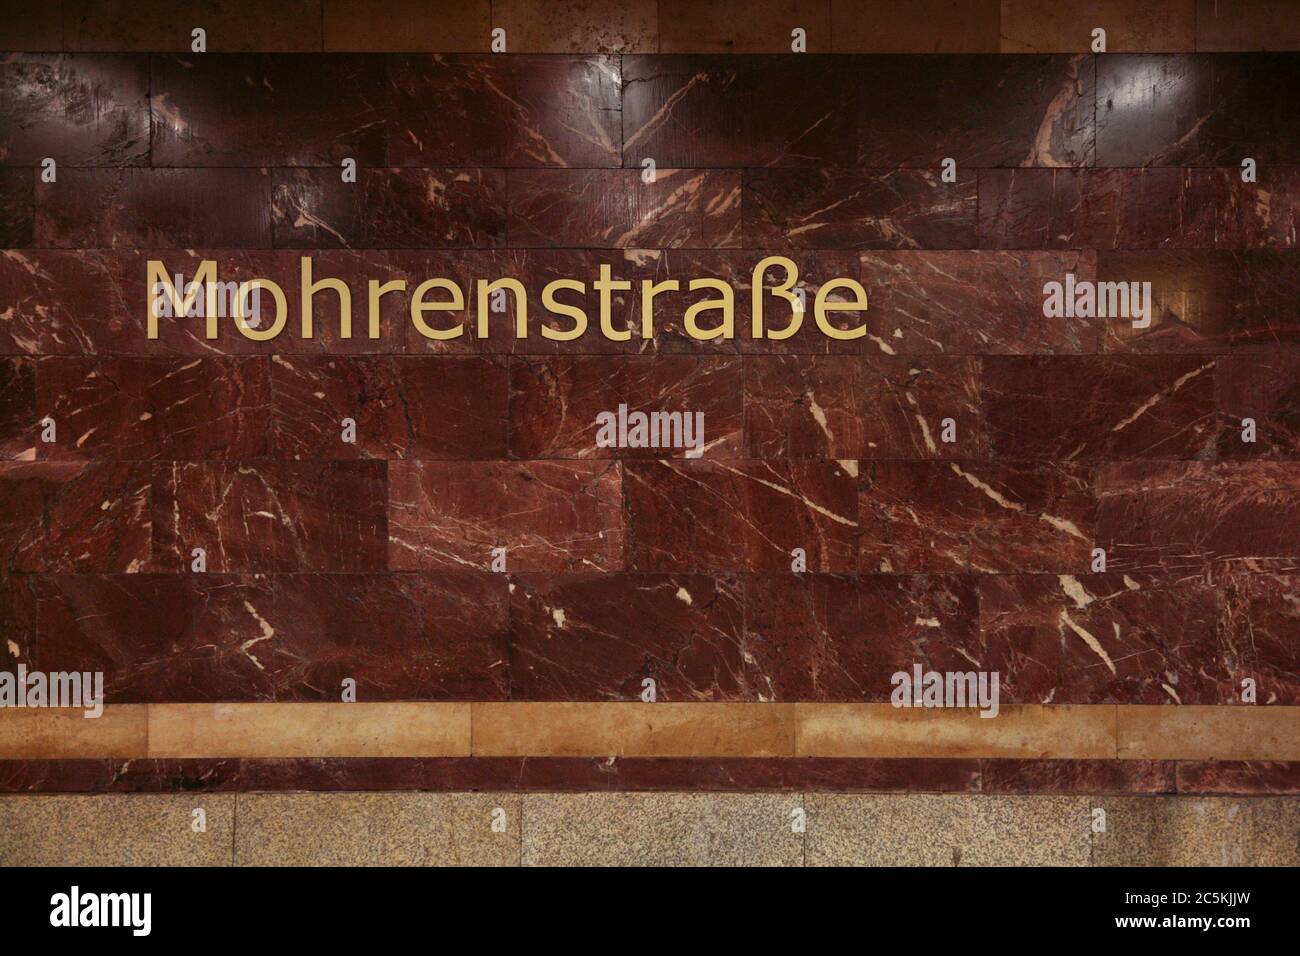 U-Bahn-Station Mohrenstraße in Berlin, Deutschland. Der städtischen Legende nach wurde der rote Stein, der in den 1950er Jahren zur Umgestaltung des Bahnhofs verwendet wurde, aus den Ruinen der Reichskanzlei entnommen, die in der Nähe des Bahnhofs gestanden hatten. Stockfoto